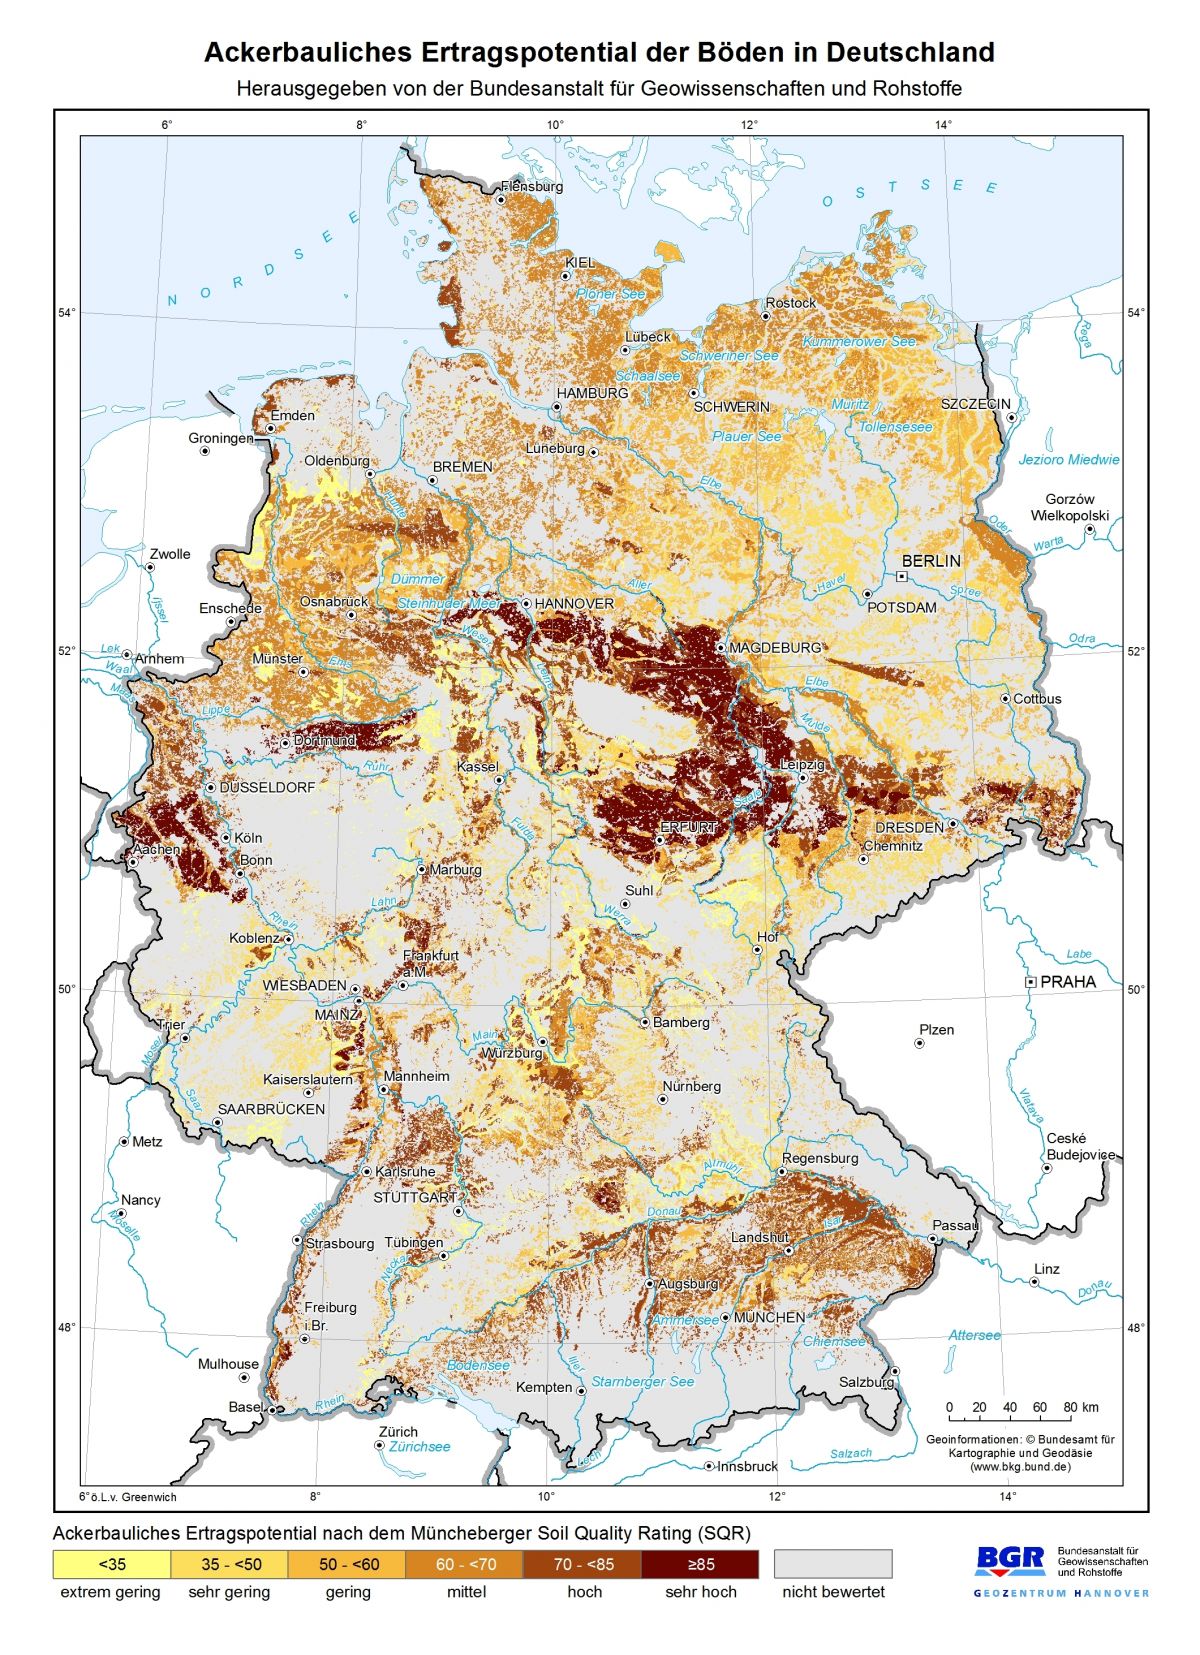 Die Bundesanstalt für Geowissenschaften und Rohstoffe (BGR) präsentiert erstmals eine bundesweit einheitliche Karte zur Bodengüte der Ackerstandorte in Deutschland.
